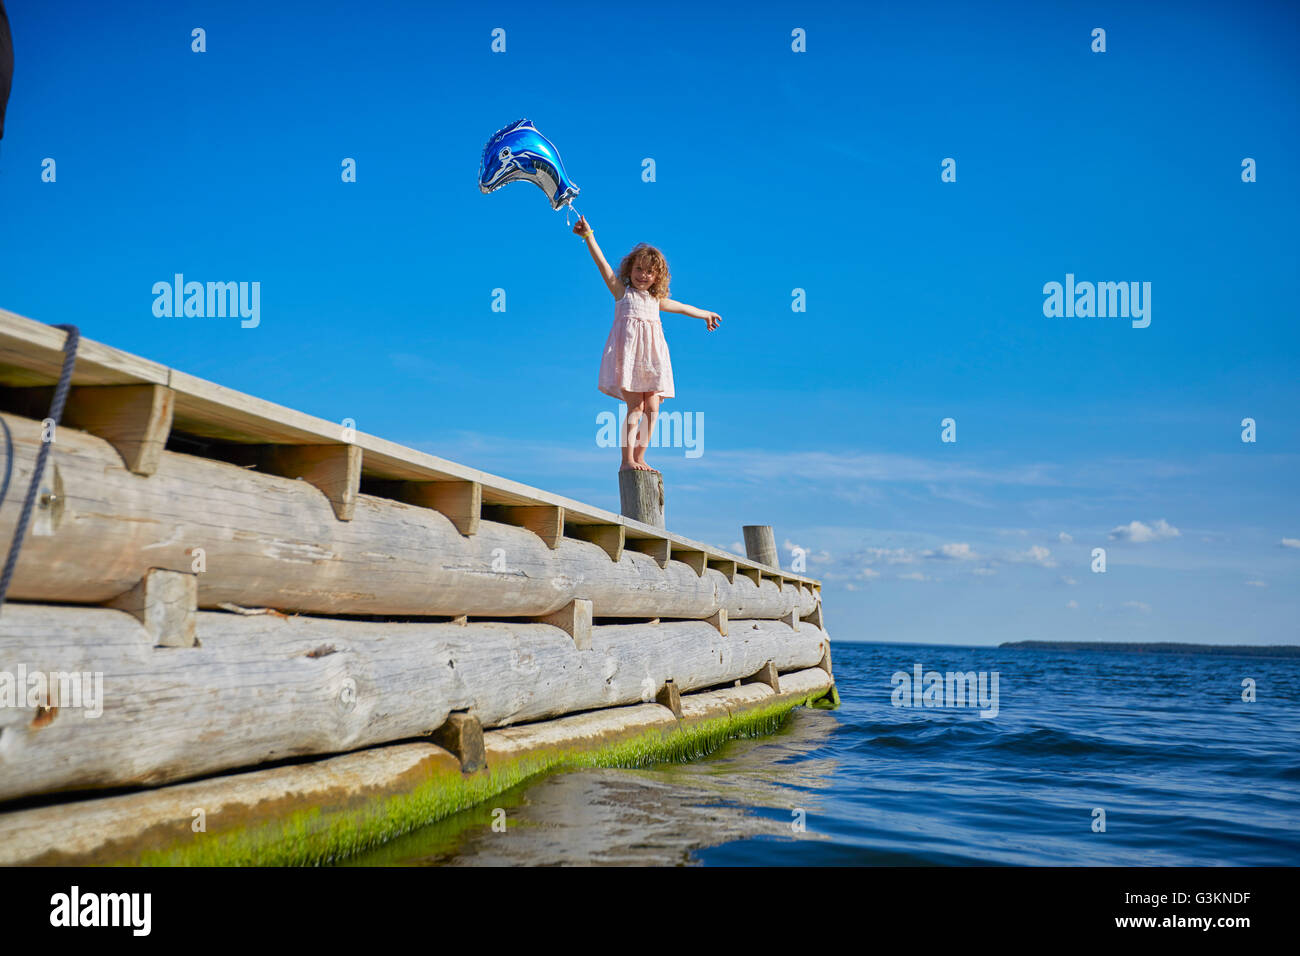 Giovane ragazza in piedi sul palo di legno sul molo, tenendo palloncino elio Foto Stock